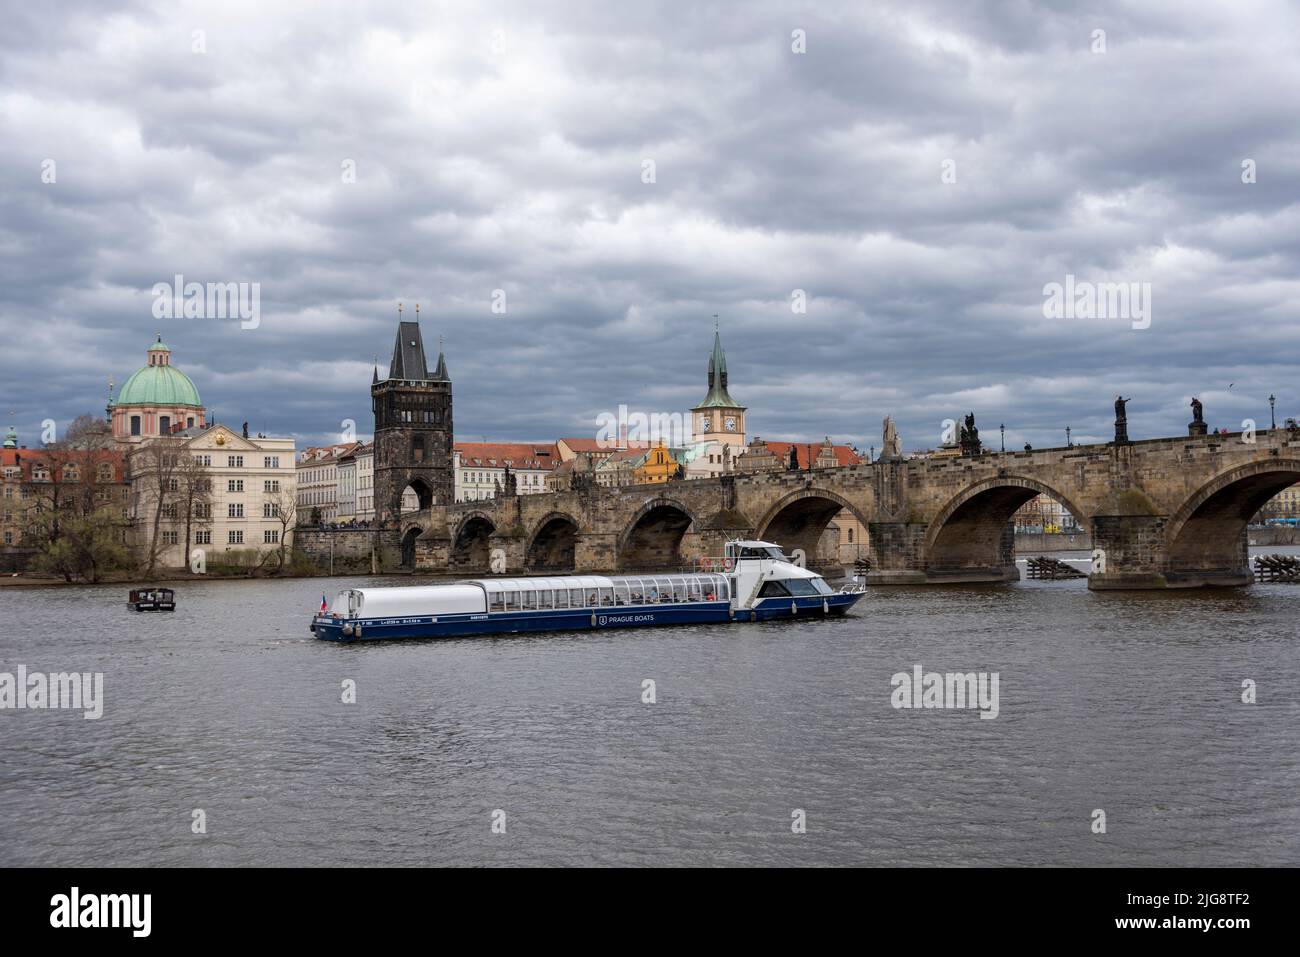 Bateau touristique sur la Vltava, le Pont Charles, la Tour du Pont de la Vieille ville, l'Eglise de la Sainte Croix, Prague, République Tchèque Banque D'Images